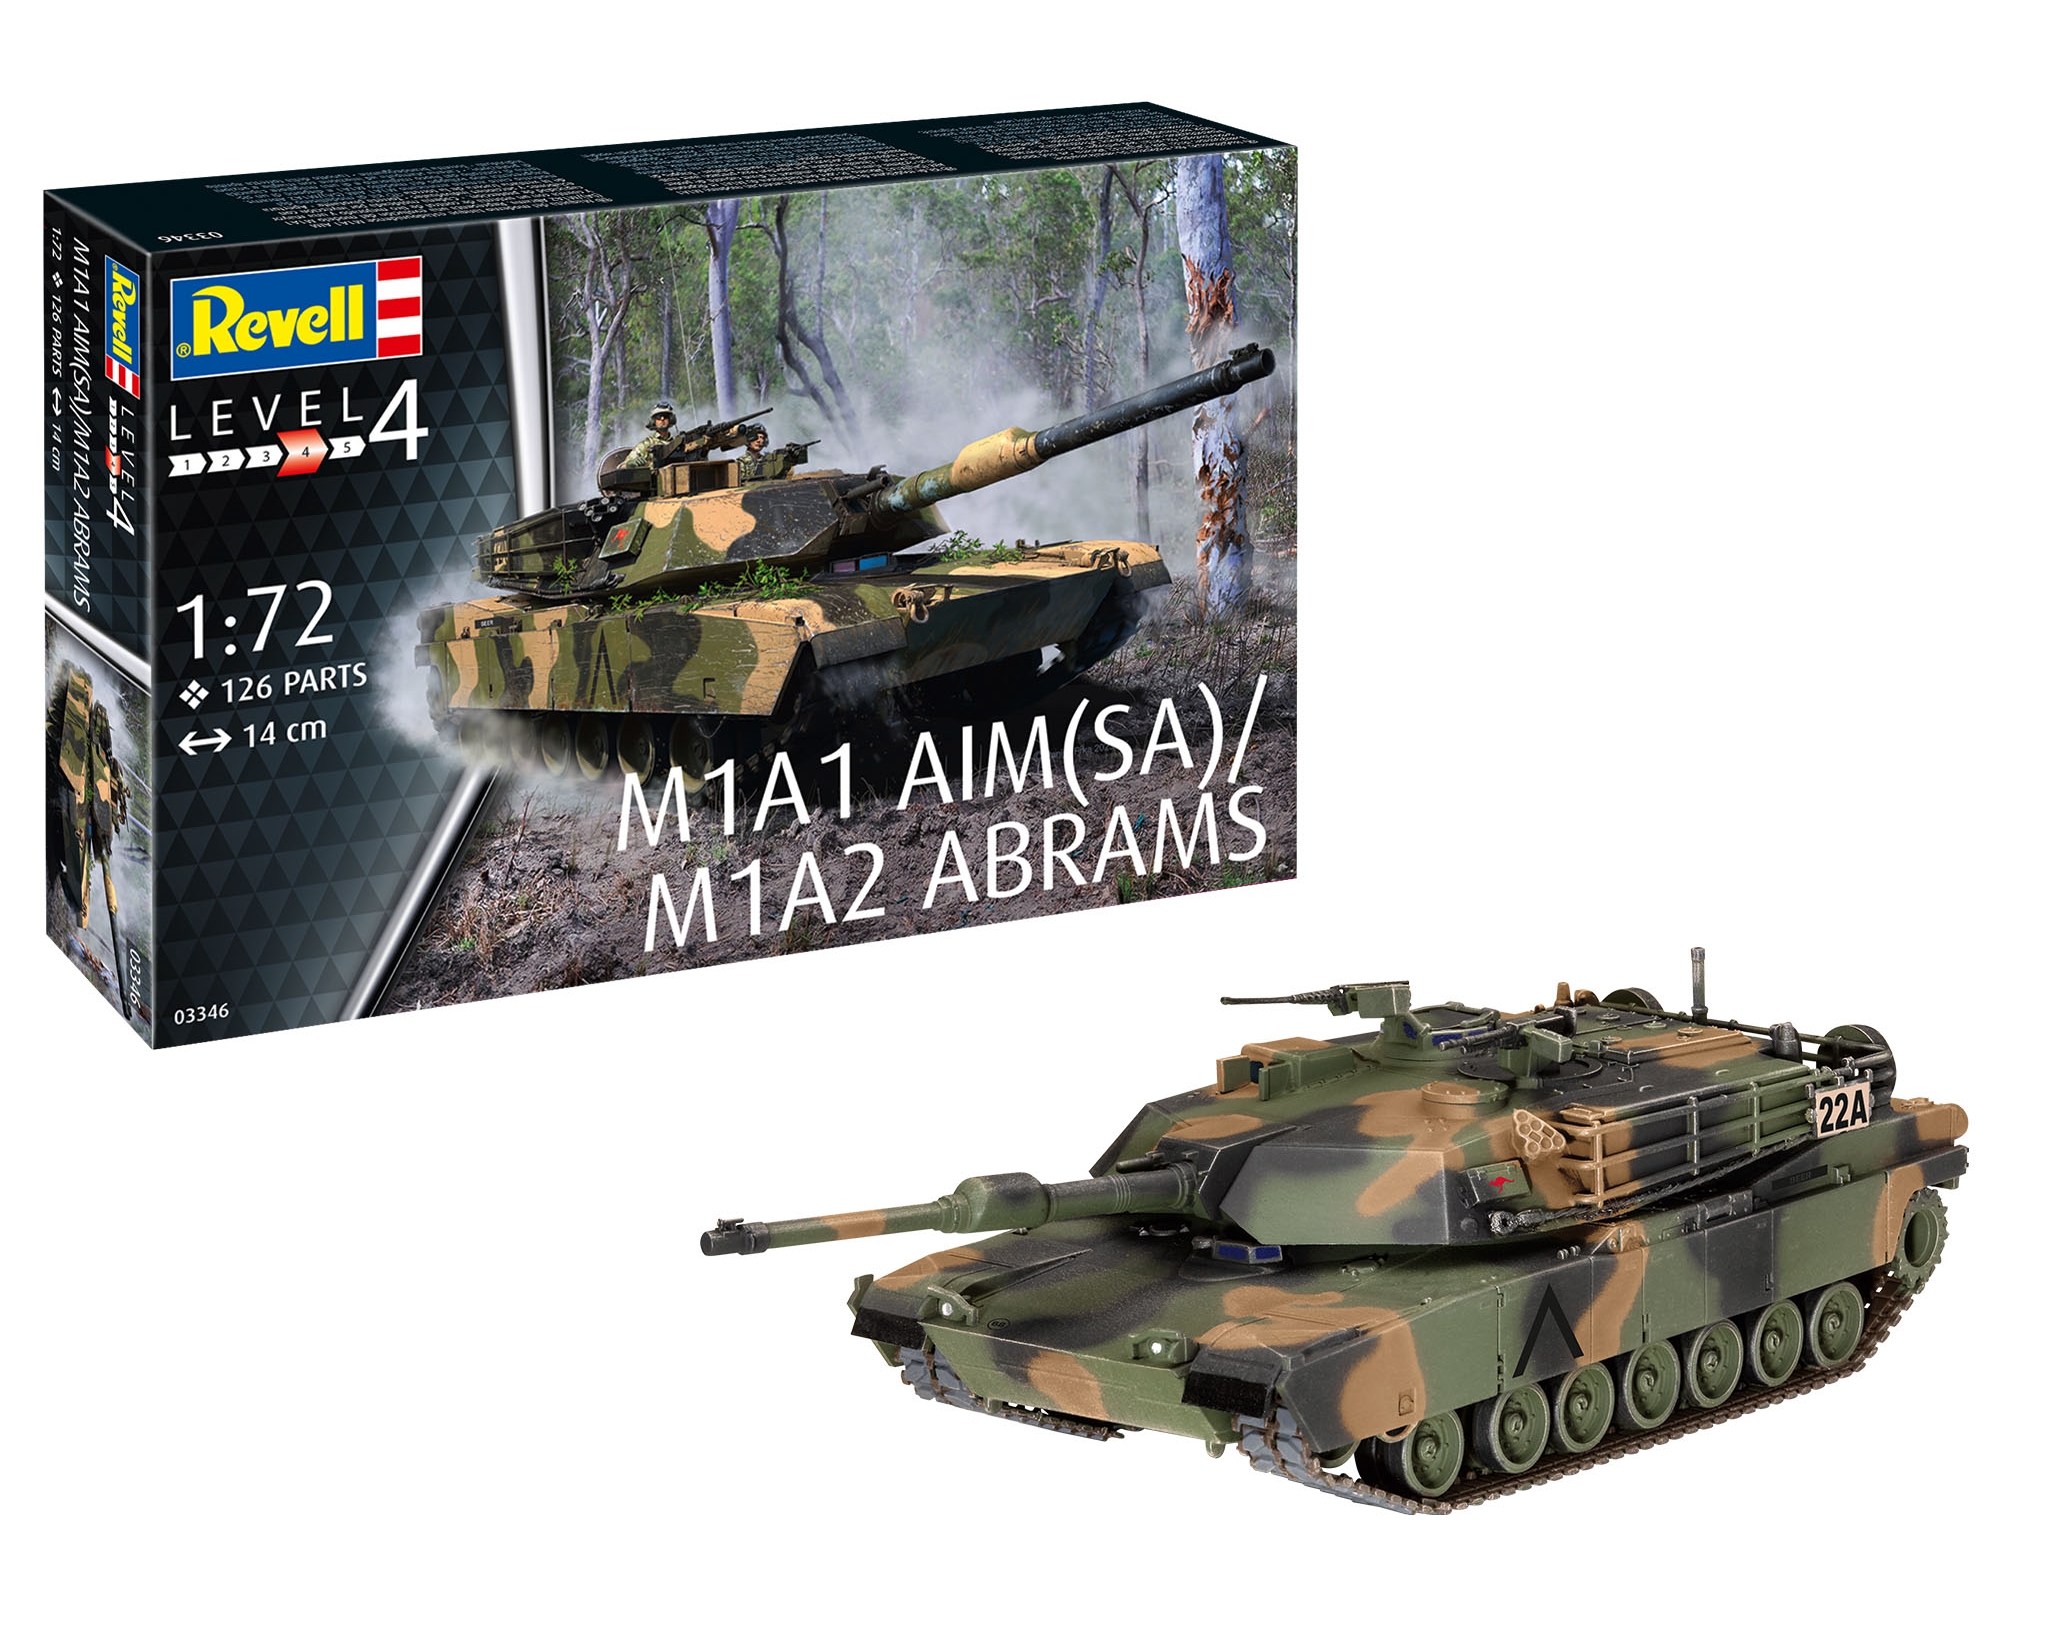 Revell 3346 - M1A1 AIM(SA)/ M1A2 ABRAMS